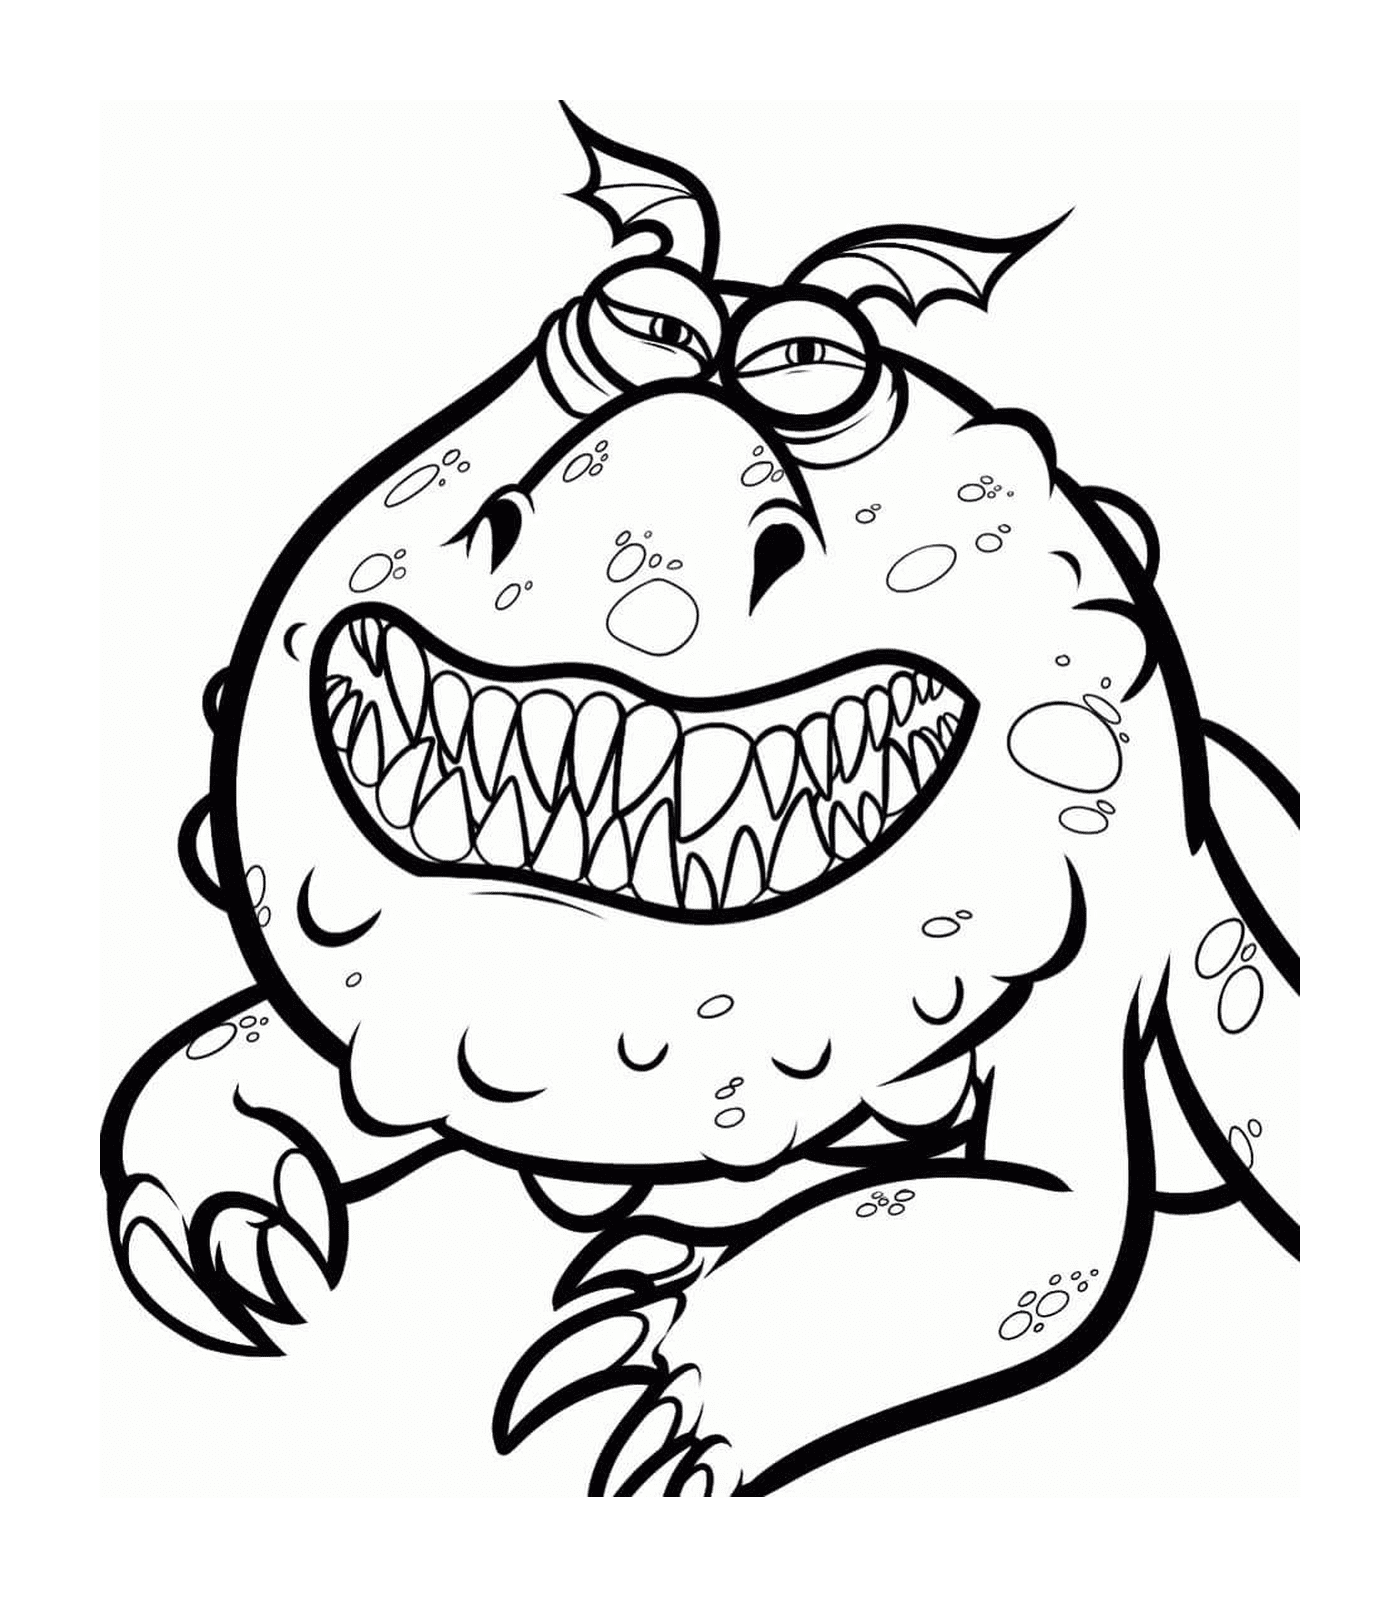  Meatlug, ein Monster mit einem großen Lächeln 